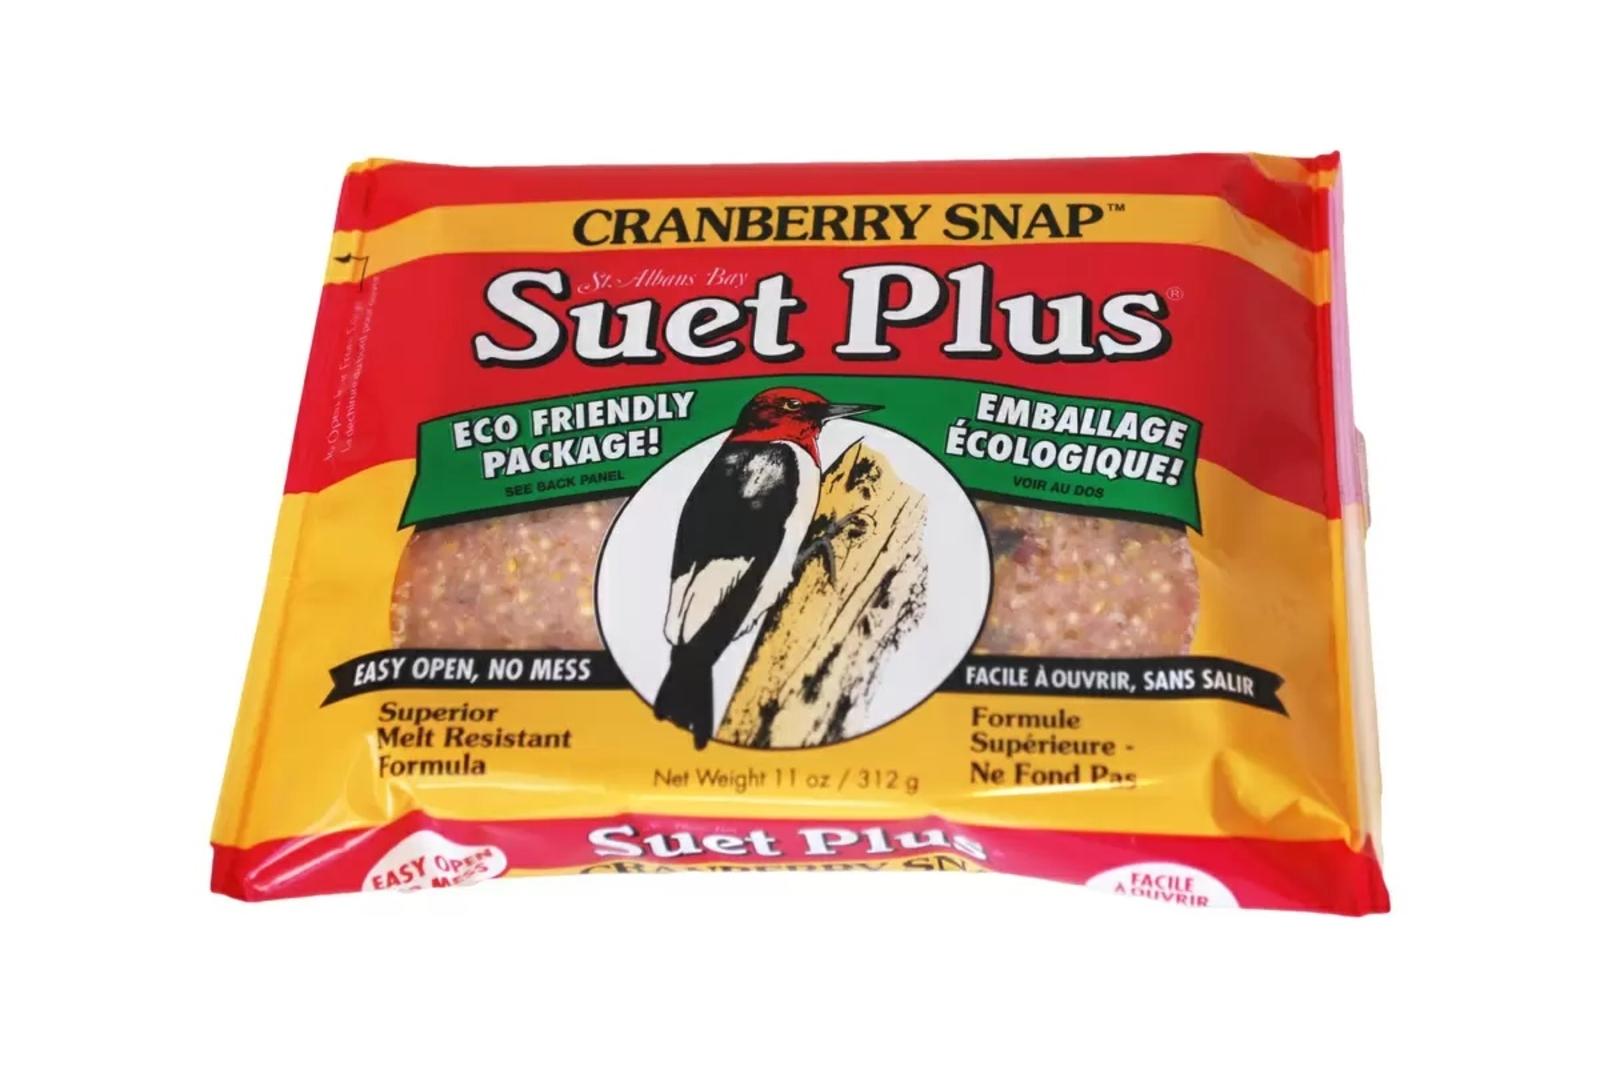 Suet Plus Cranberry Snap Suet Plus Cake